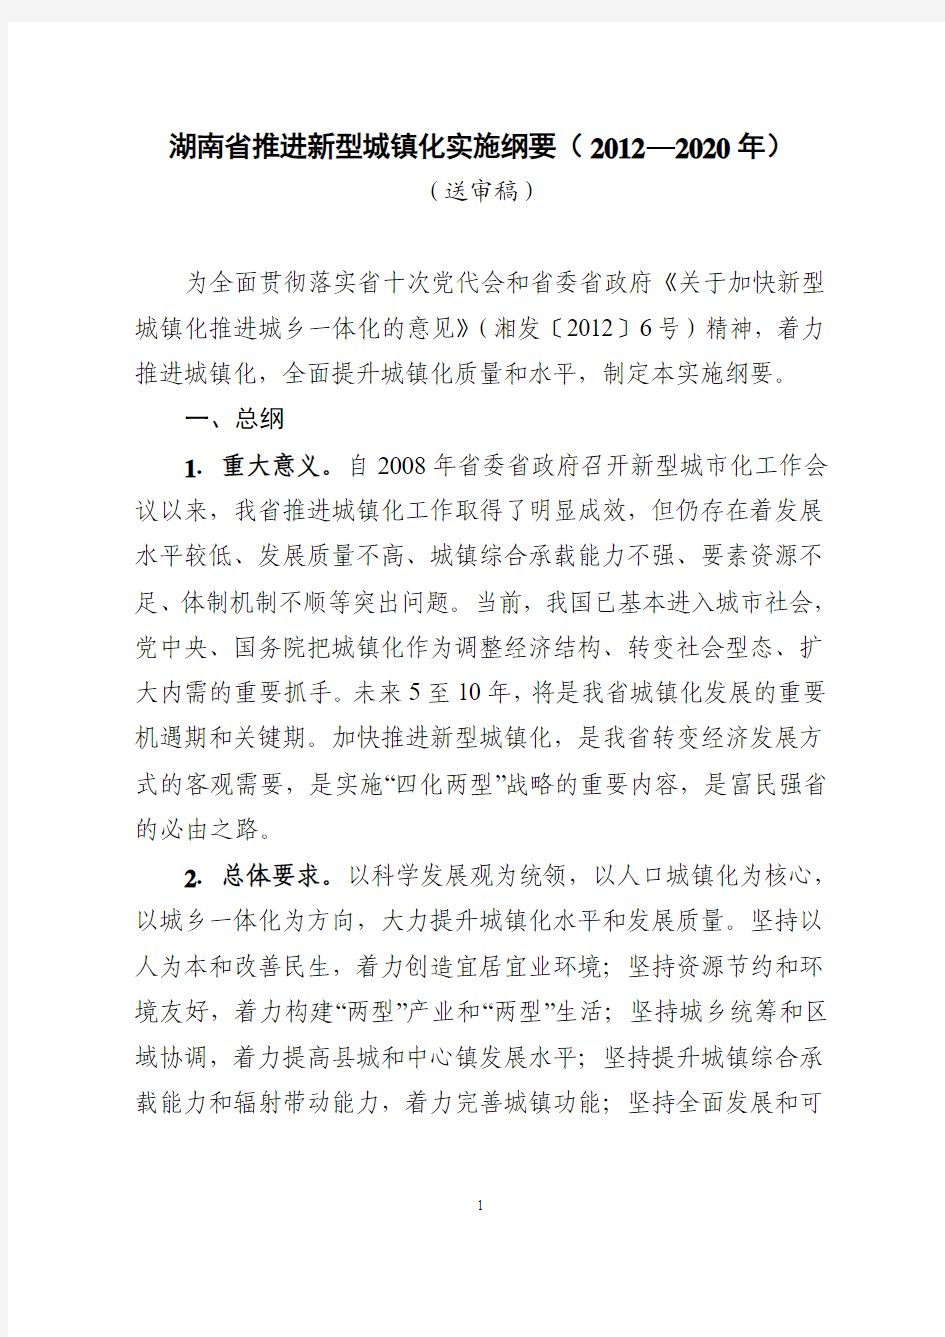 《湖南省推进新型城镇化实施纲要(2012—2020年)》(征求意见稿)